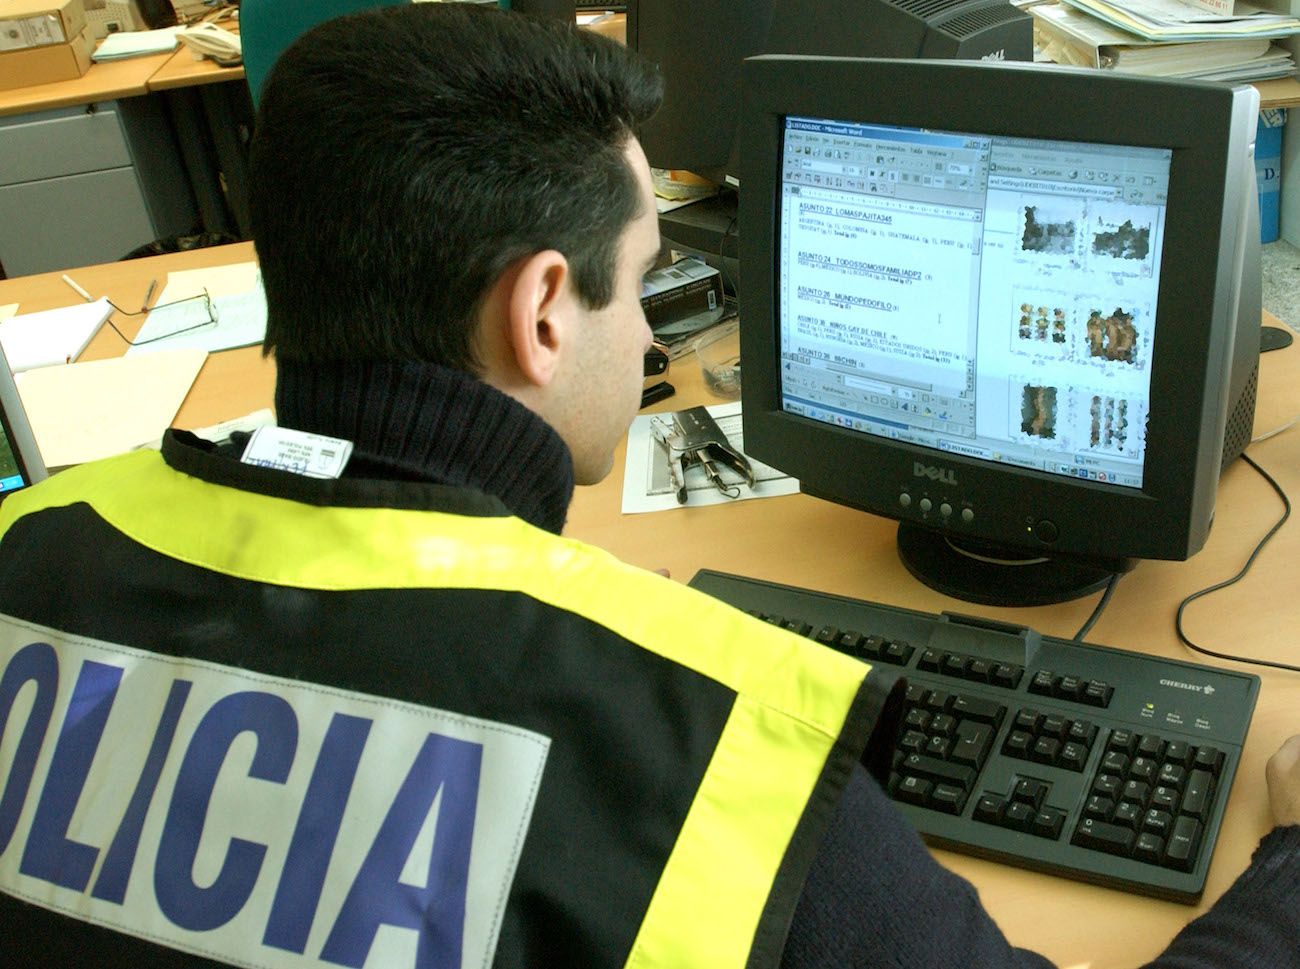 Un Policía, inspeccionando un equipo informático.